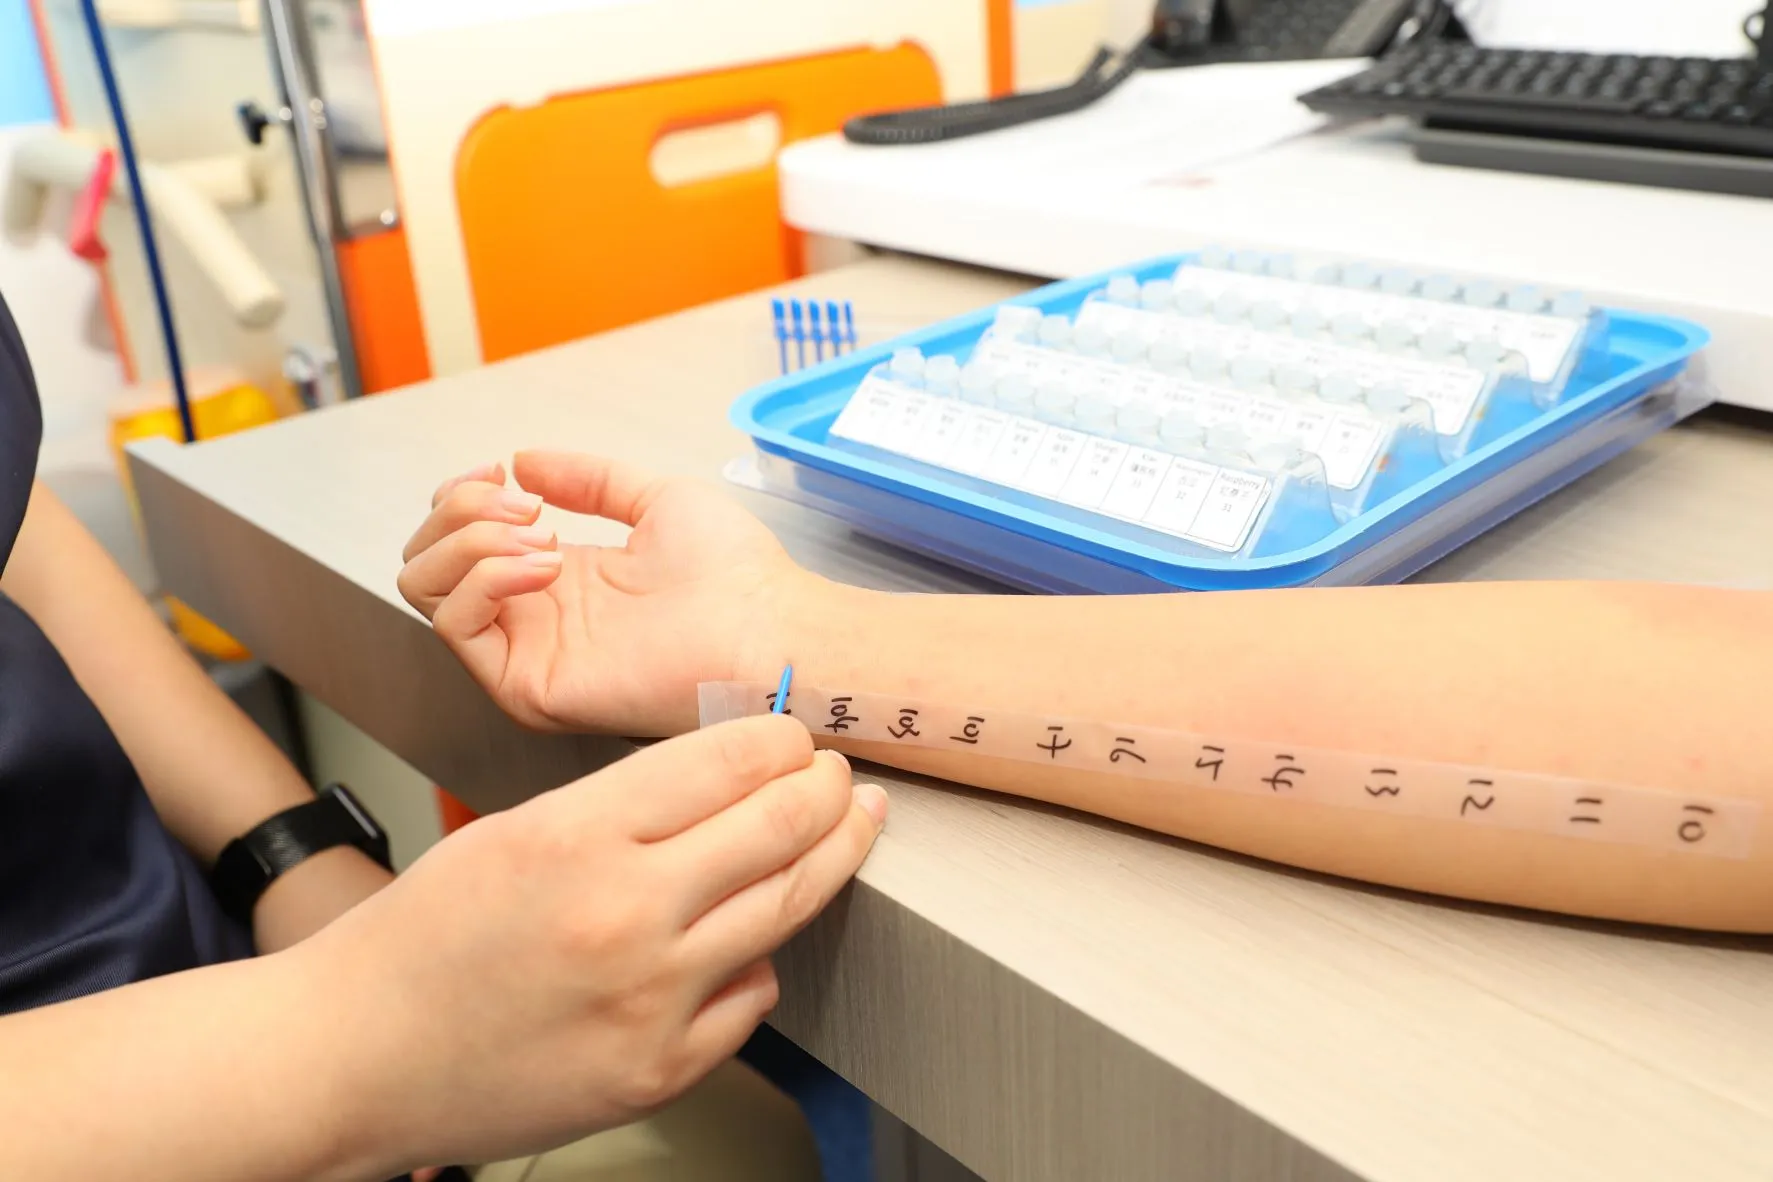 皮膚點刺測試可在患者前臂或背部皮膚進行